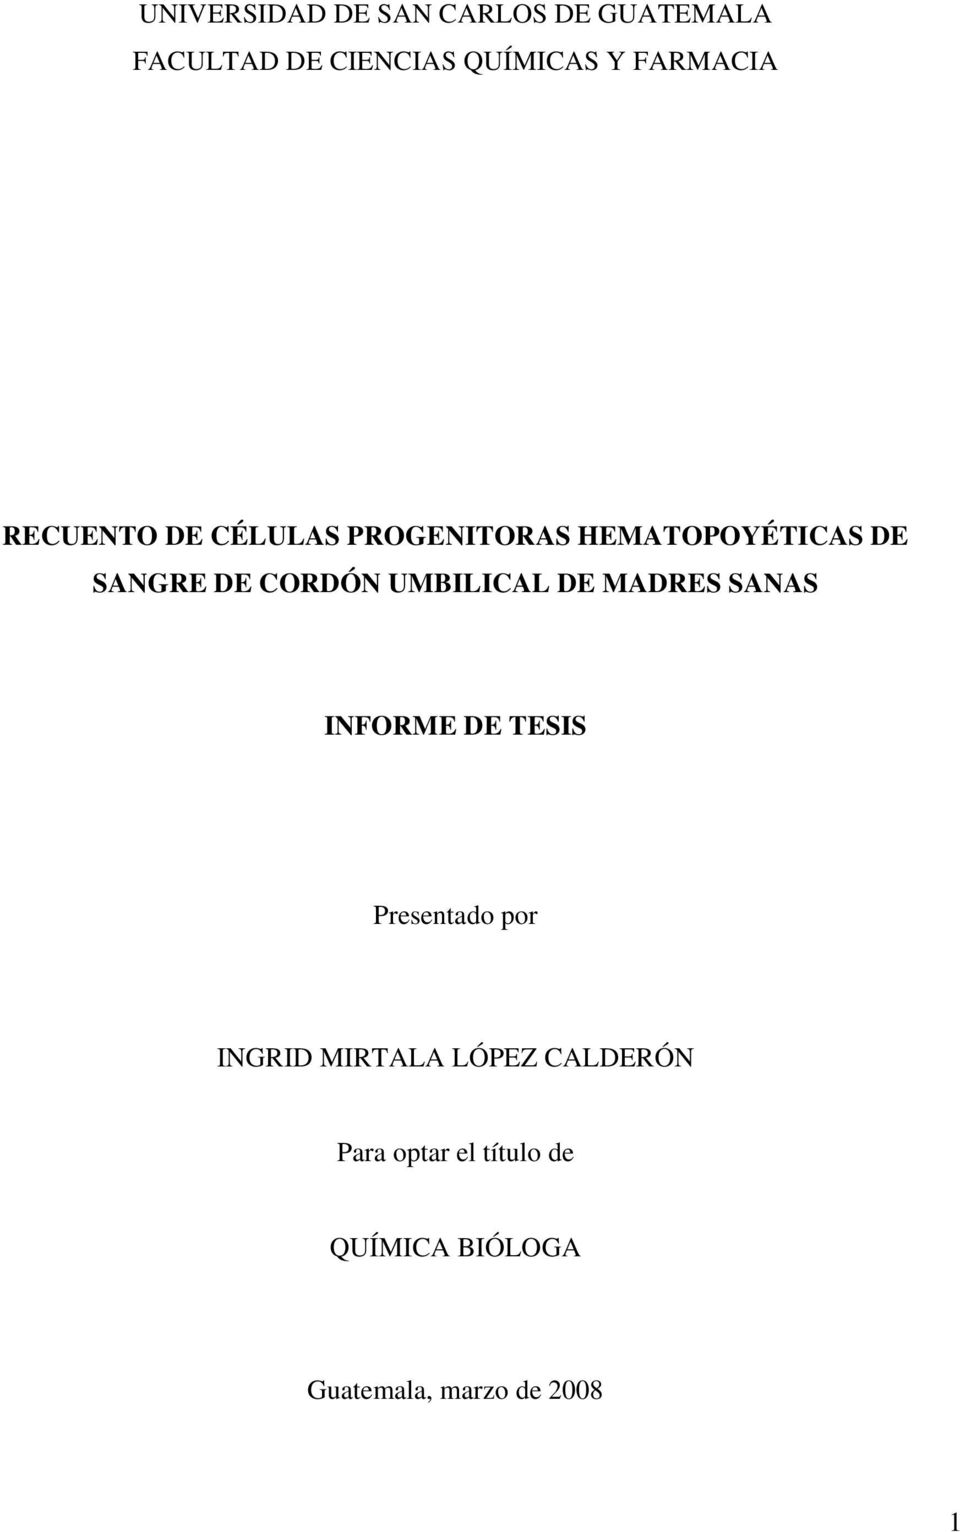 CORDÓN UMBILICAL DE MADRES SANAS INFORME DE TESIS Presentado por INGRID